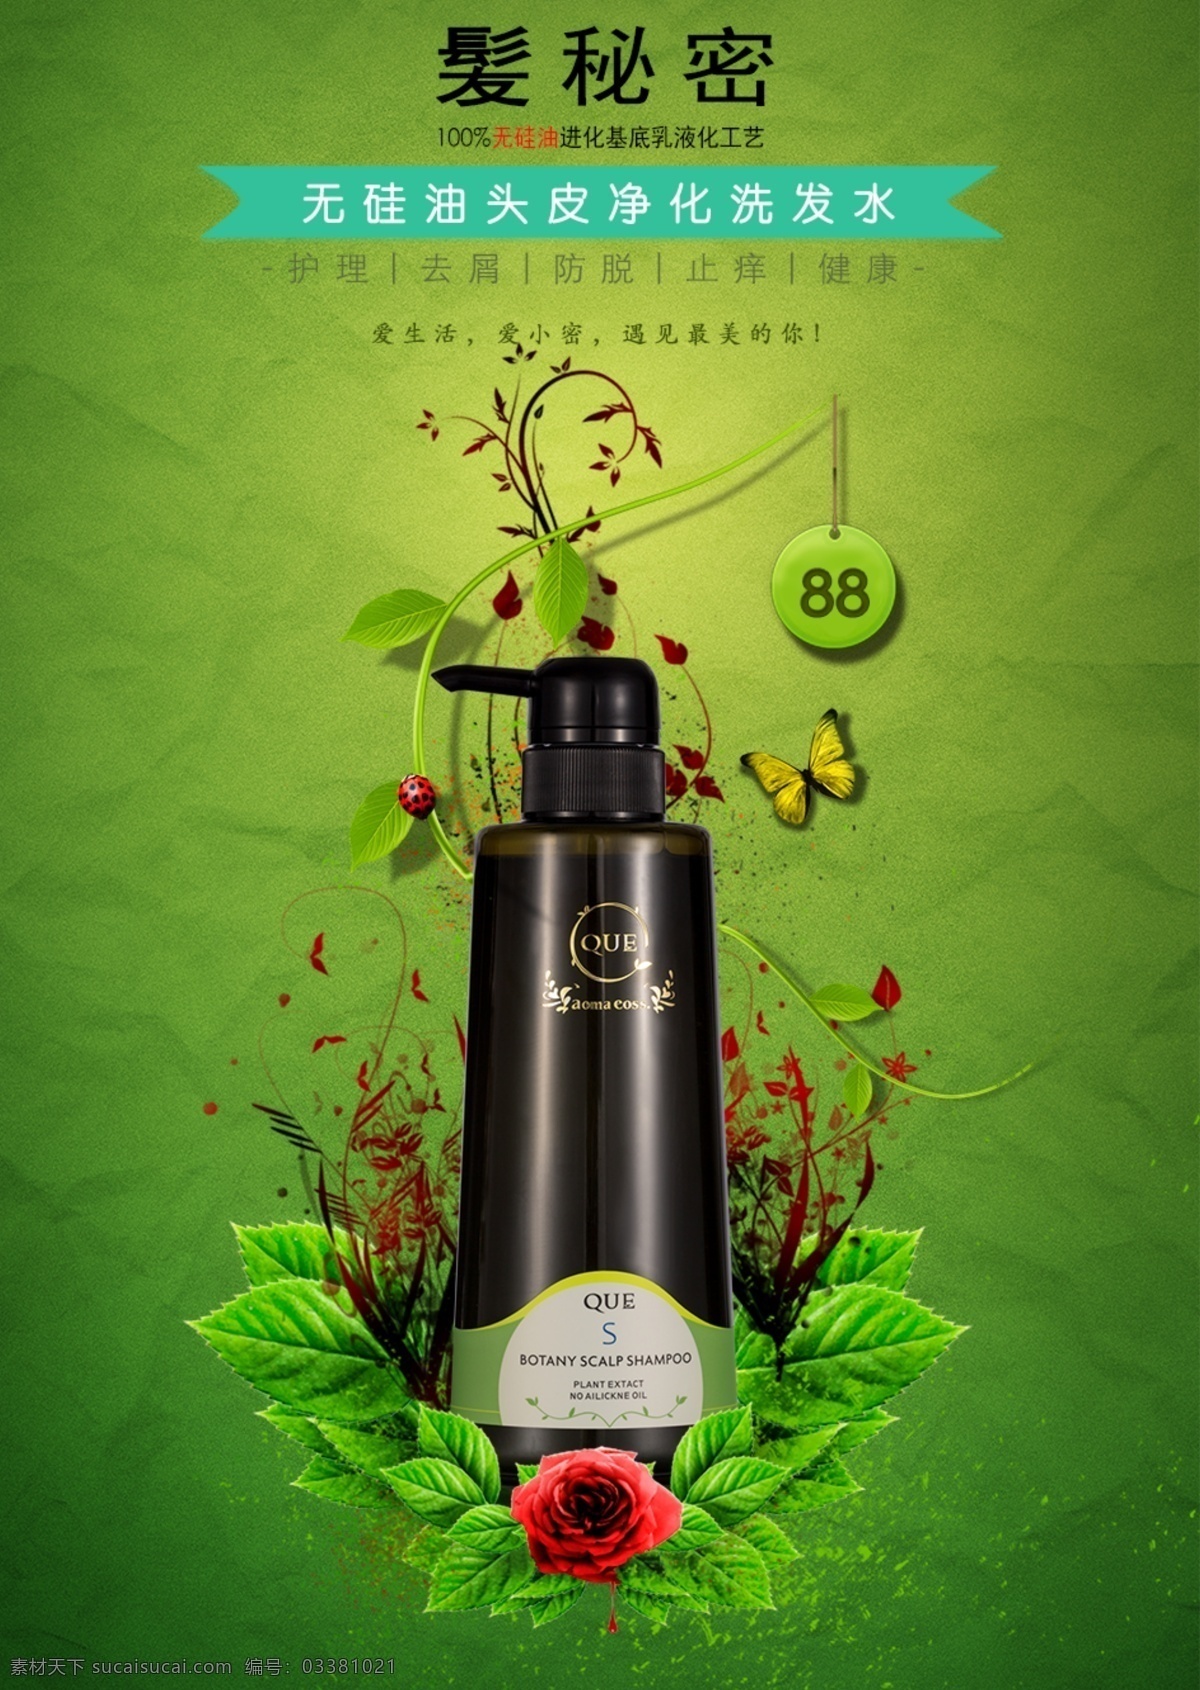 洗发水 广告 海报 产品海报 护肤品广告 无 硅油 产品 绿色设计海报 护肤品 植物